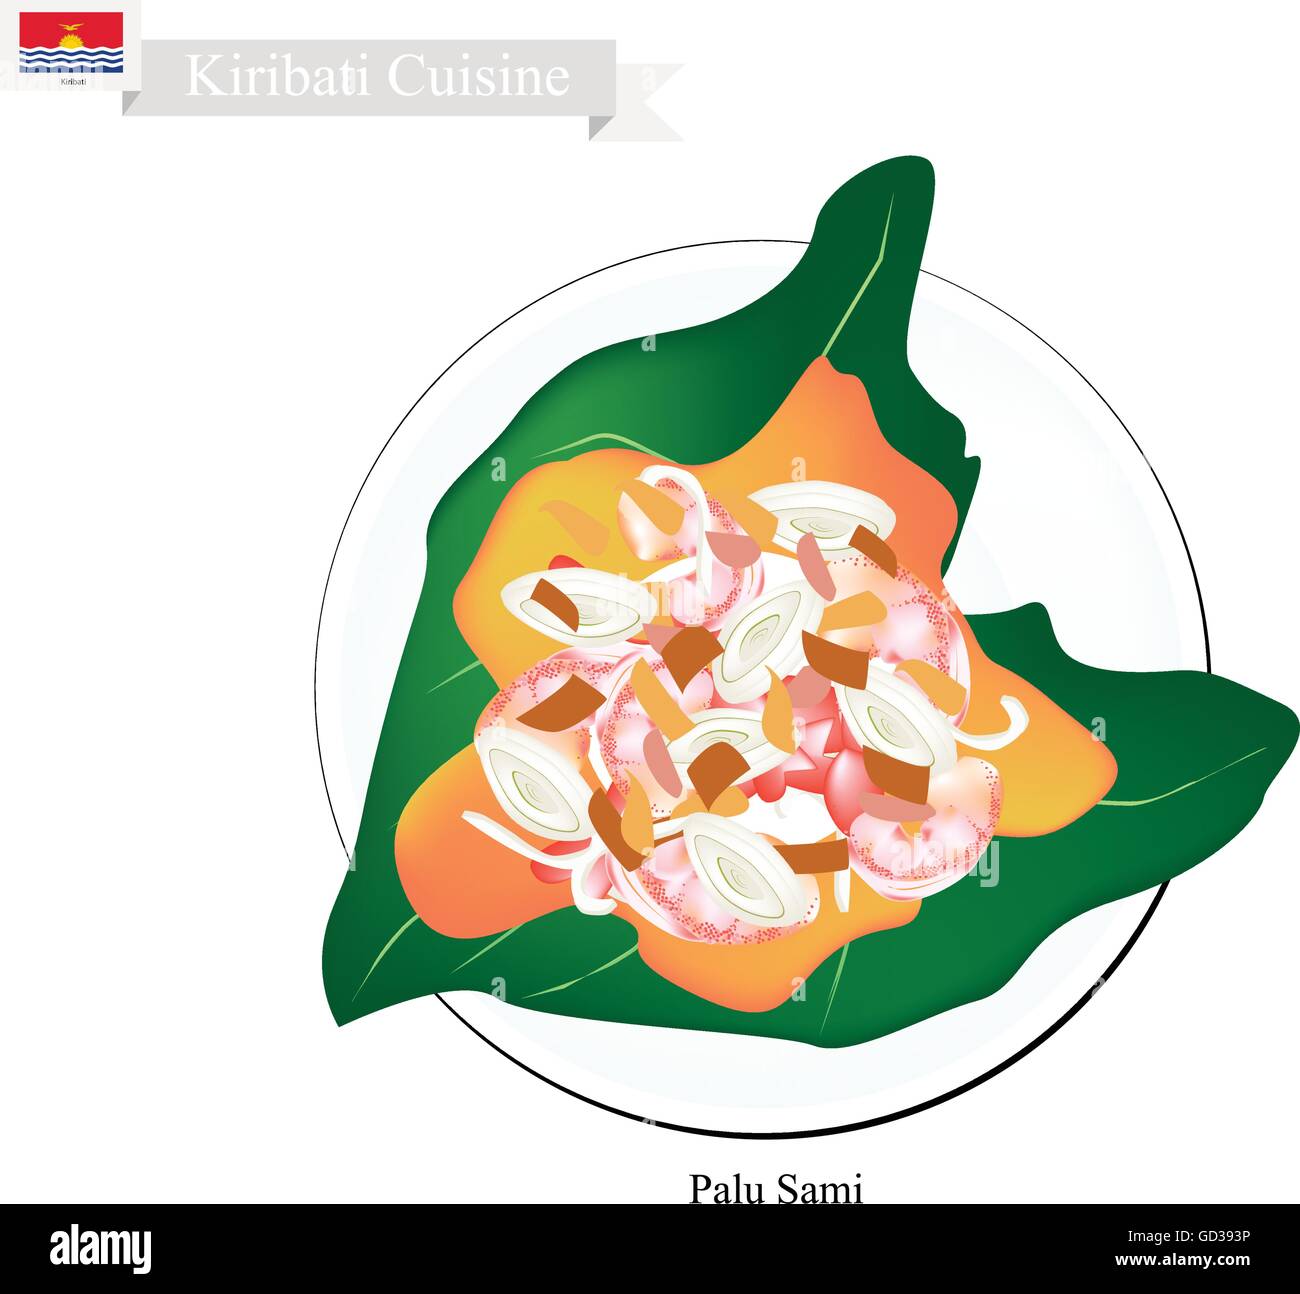 Cucina di Kiribati, illustrazione di Palu Sami tradizionali o di carne con crema di noce di cocco, la cipolla e il curry in polvere avvolto in permesso di Taro Illustrazione Vettoriale